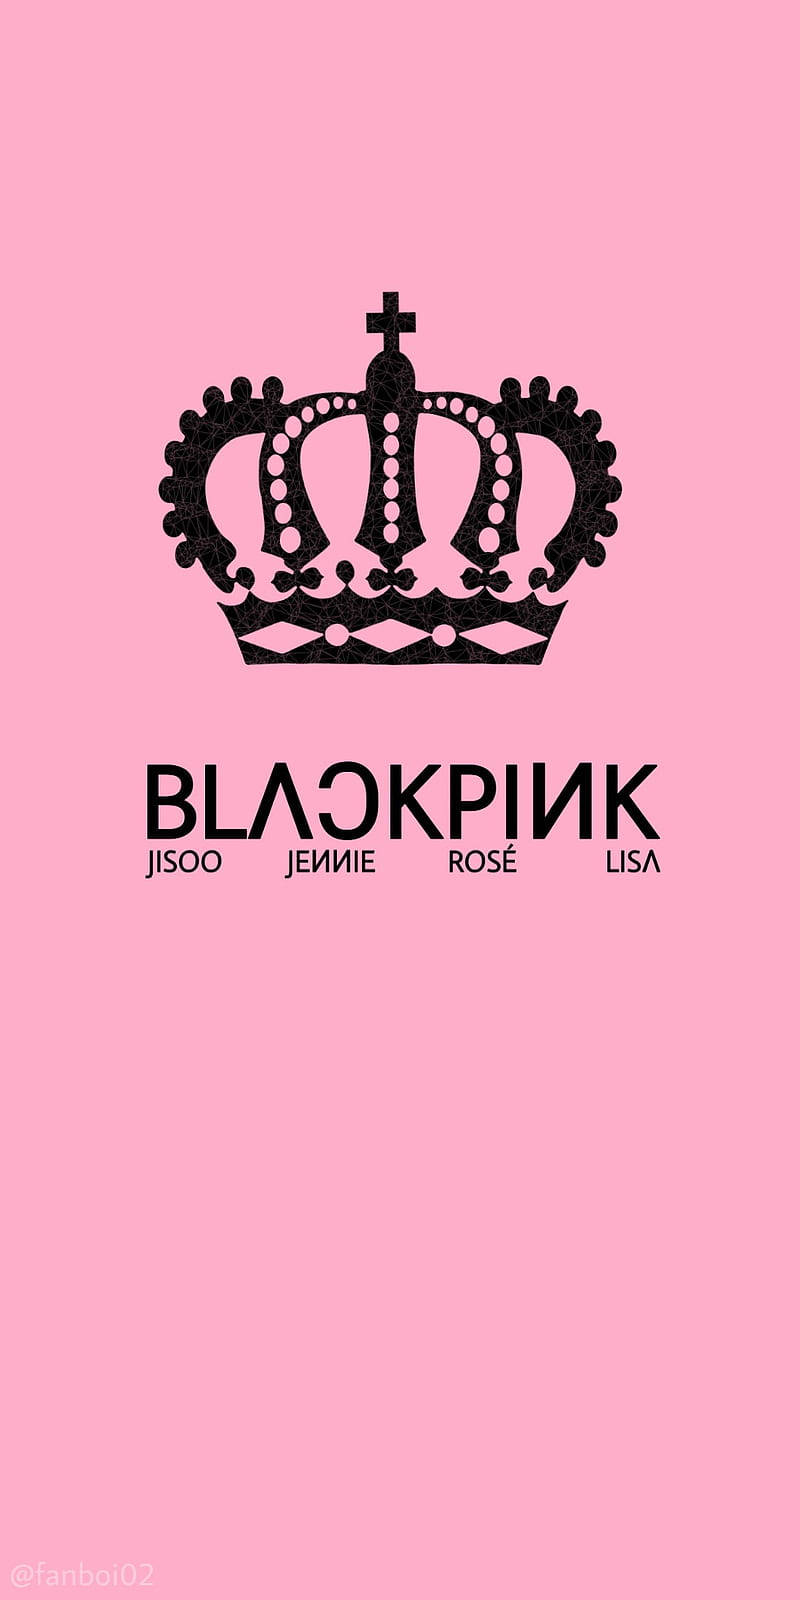 Striking Blackpink Logo With A Dark Background